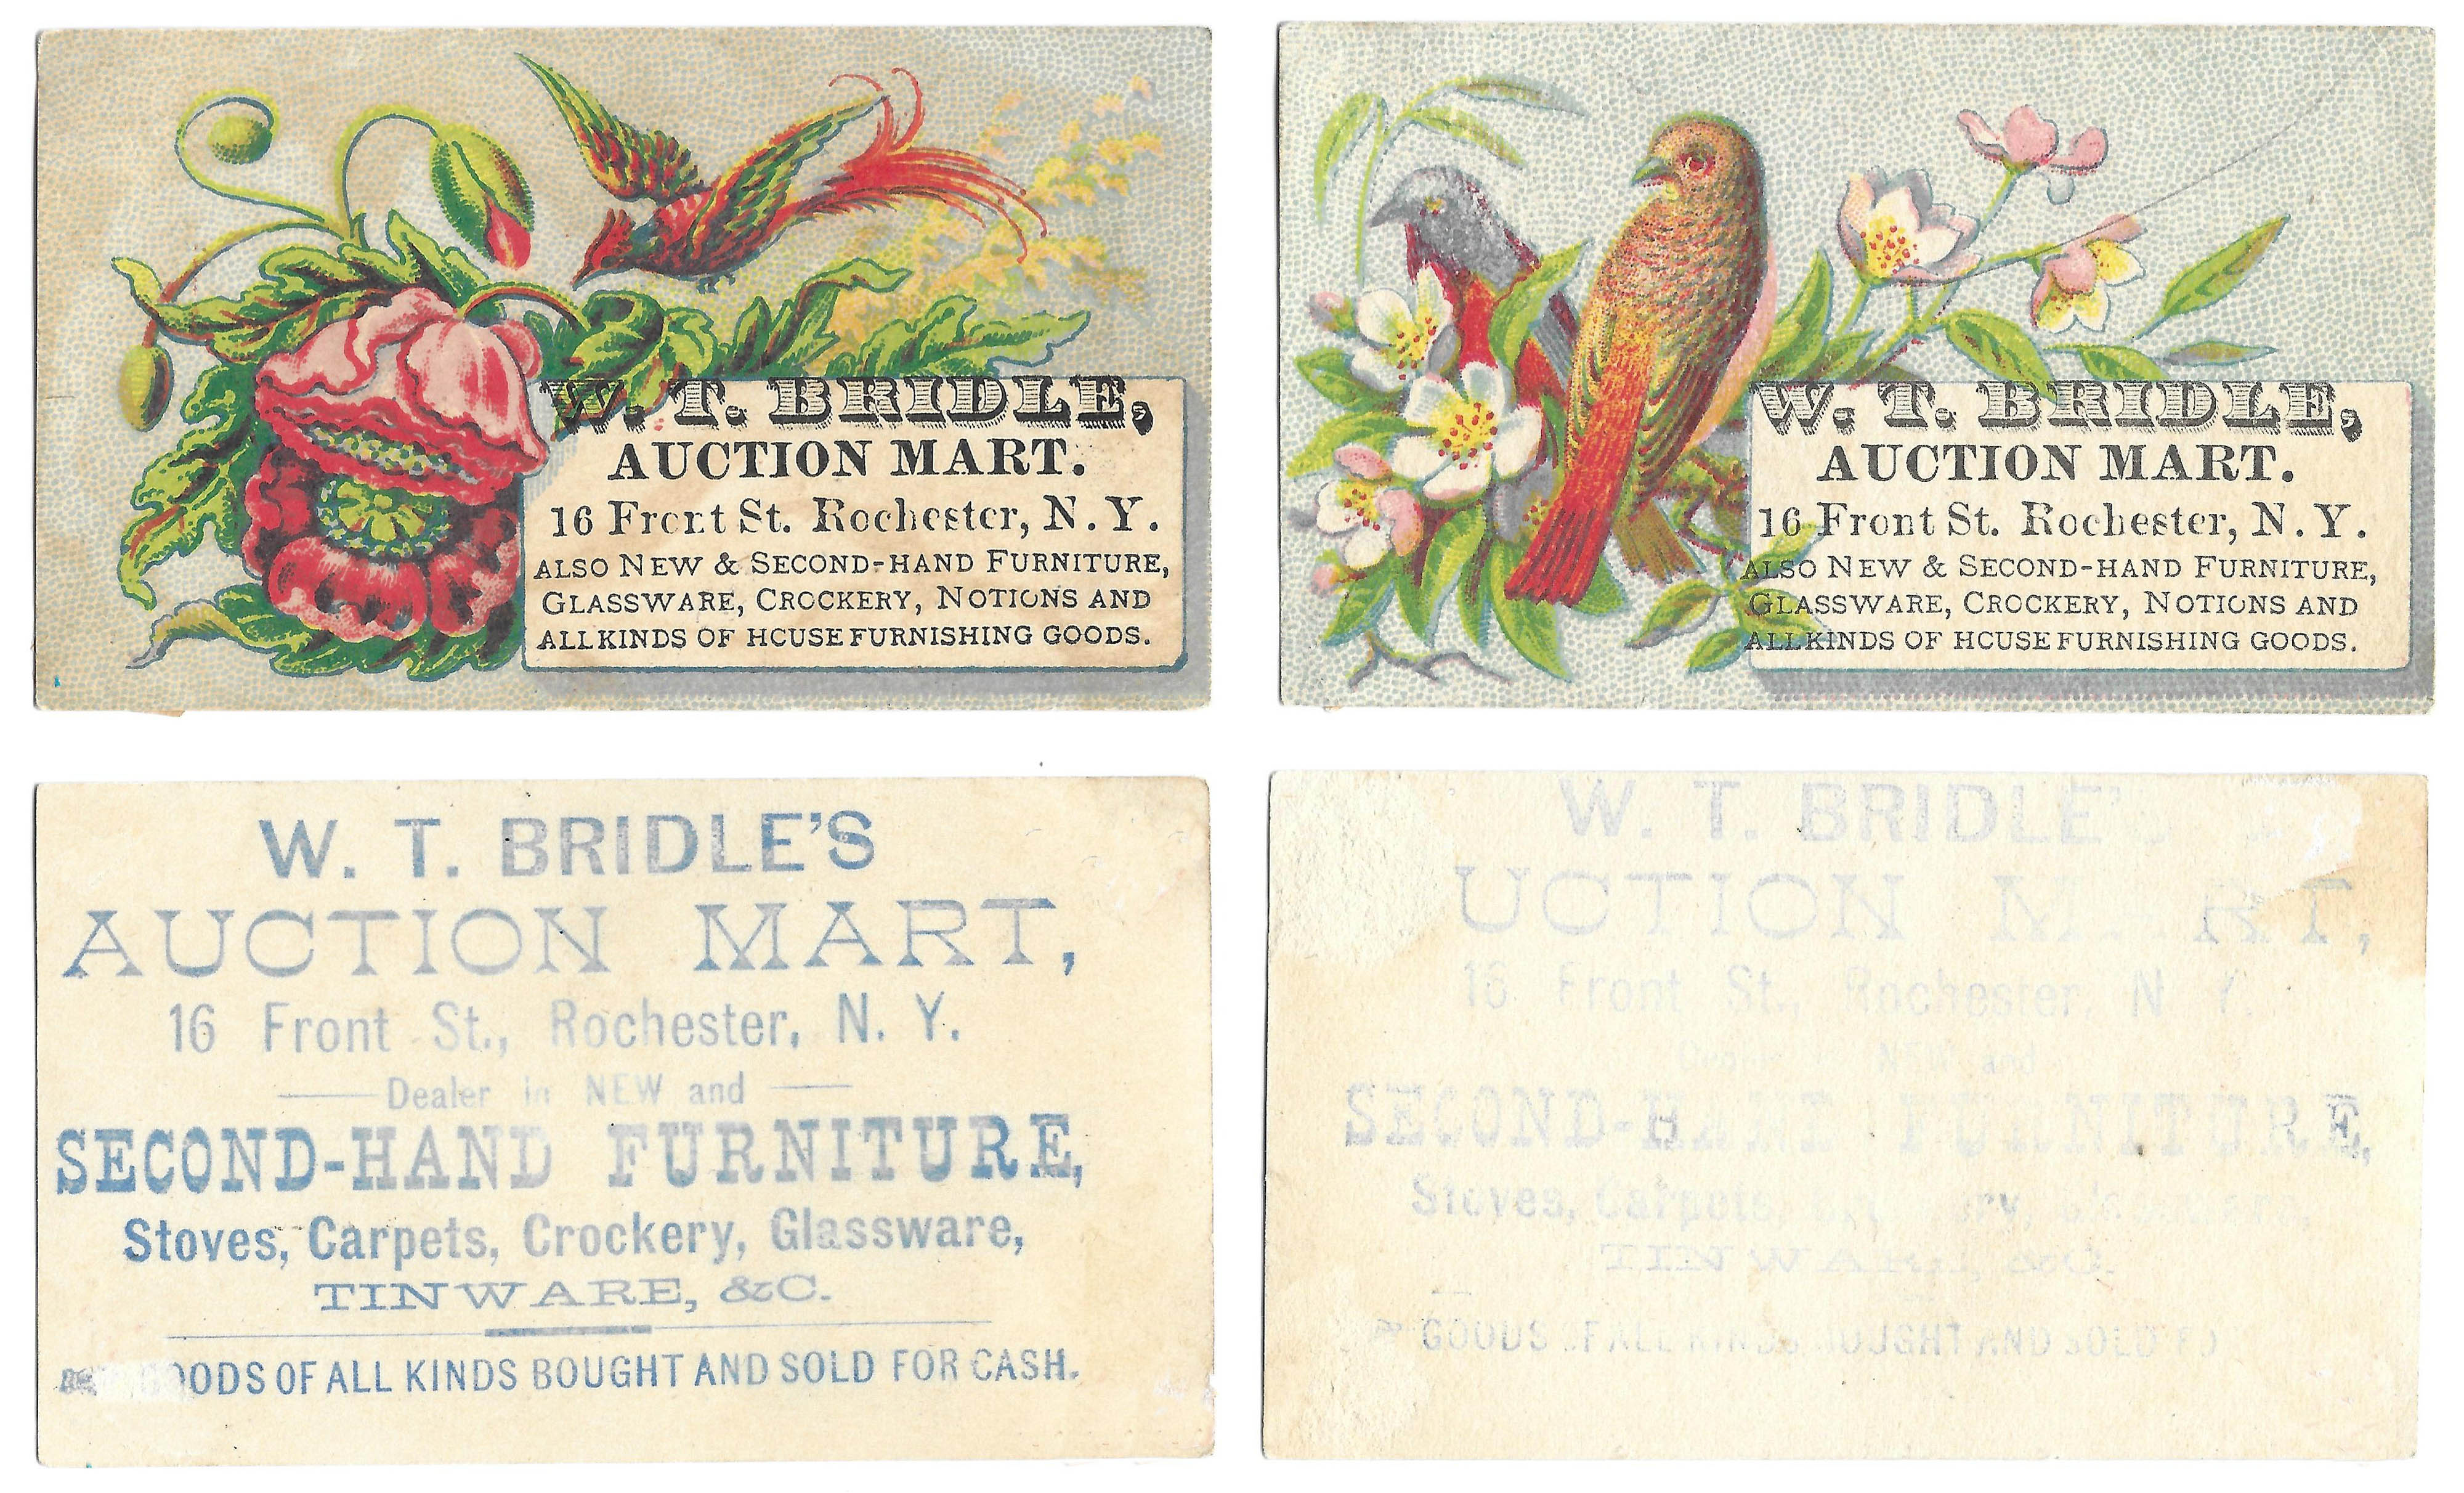 W. T. Bridle Auction Mart